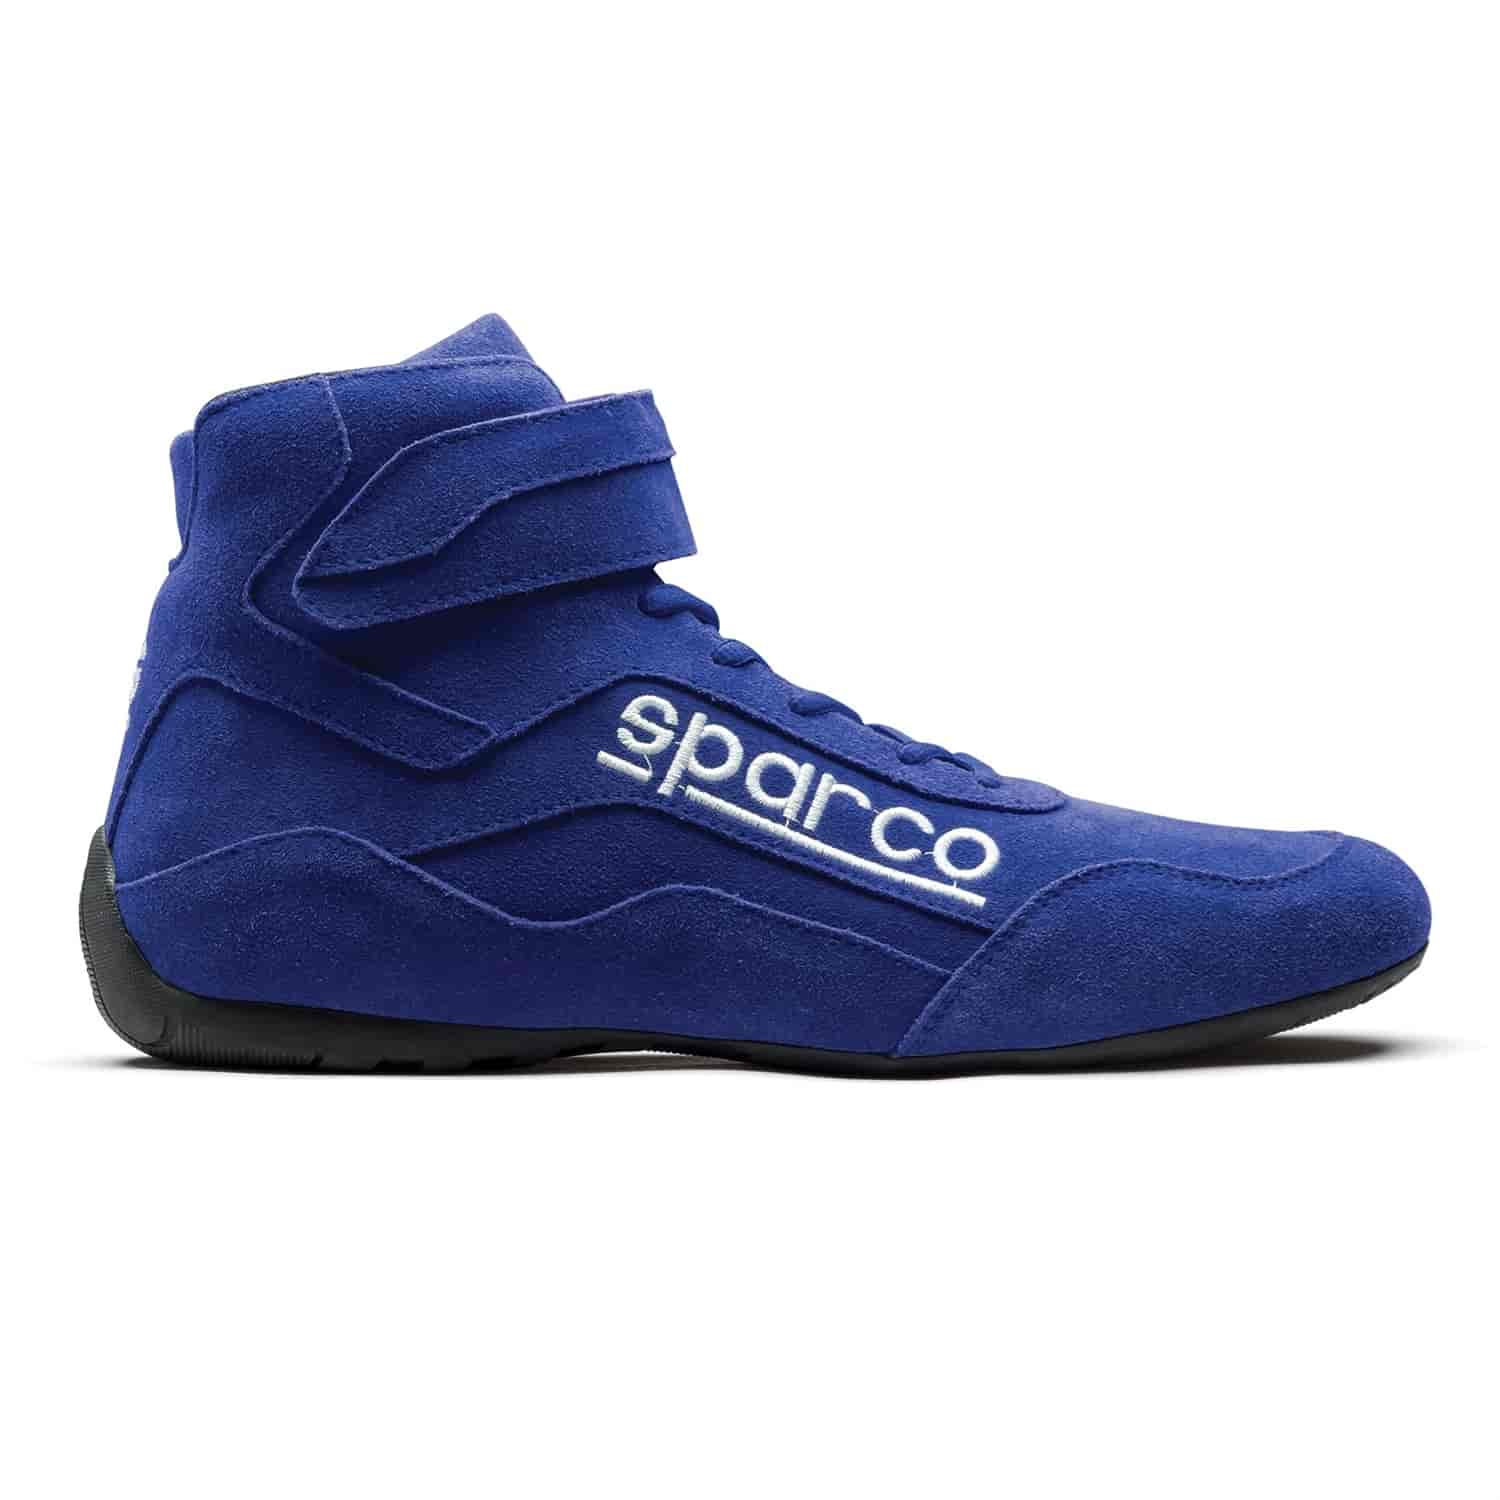 Race 2 Shoe Size 9.5 - Blue